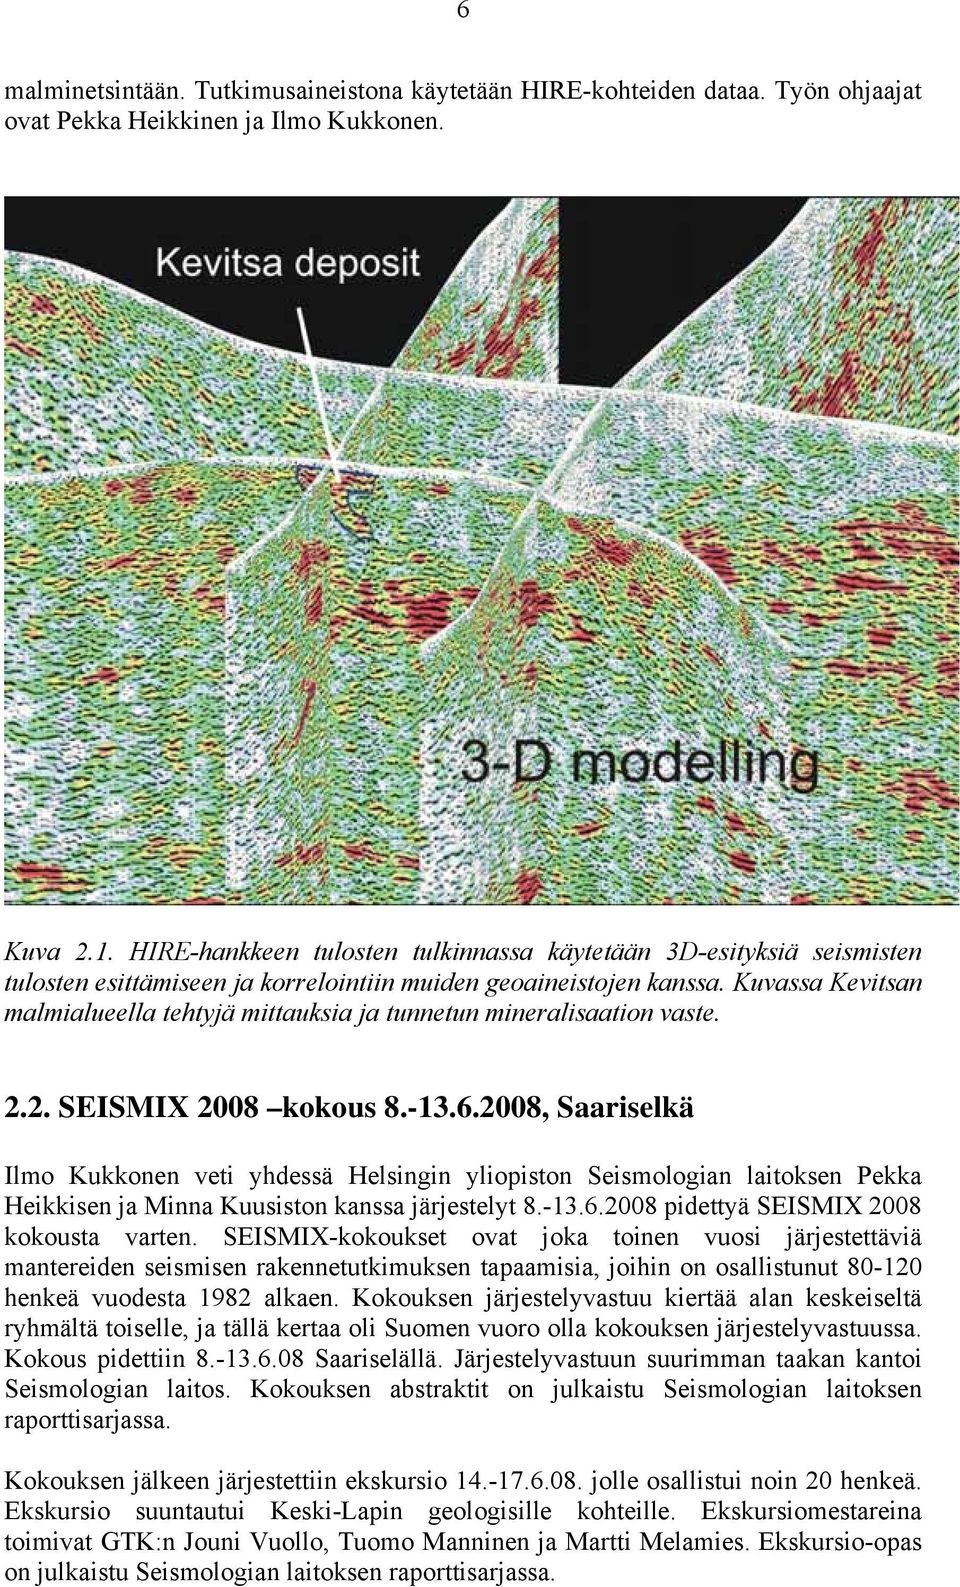 Kuvassa Kevitsan malmialueella tehtyjä mittauksia ja tunnetun mineralisaation vaste. 2.2. SEISMIX 2008 kokous 8.-13.6.